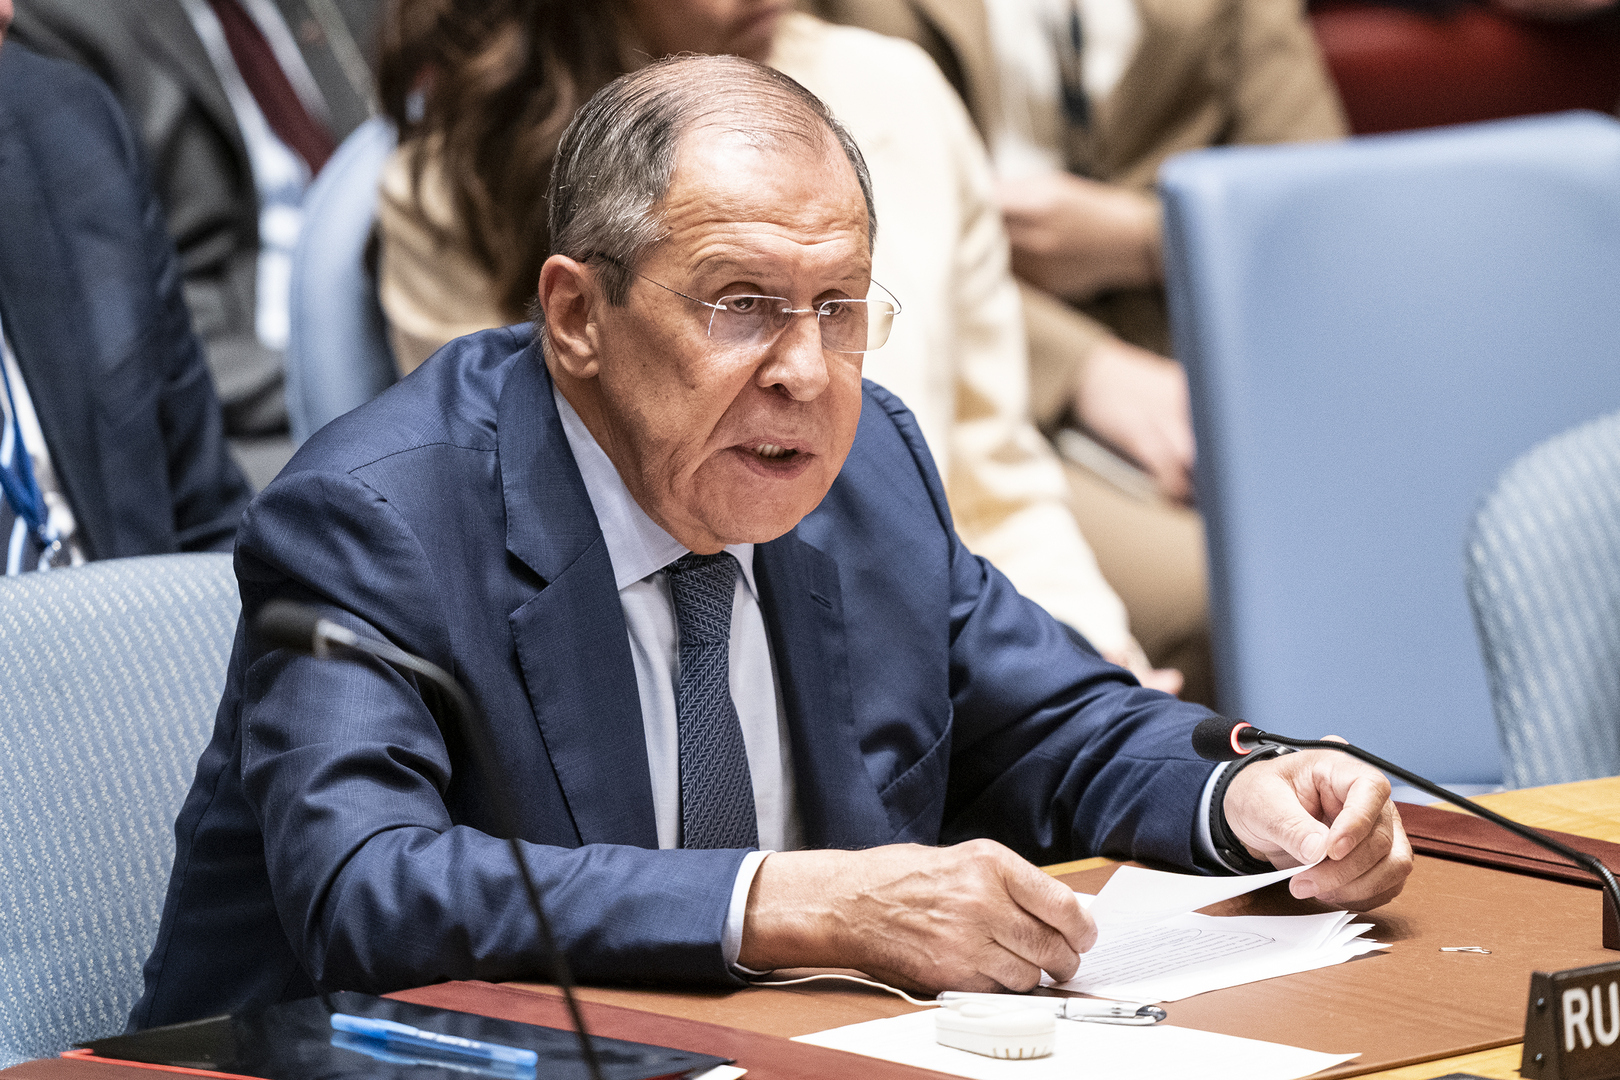 بوليانسكي: روسيا ستكون وسيطا عادلا ونزيها خلال ترؤسها لمجلس الأمن الدولي